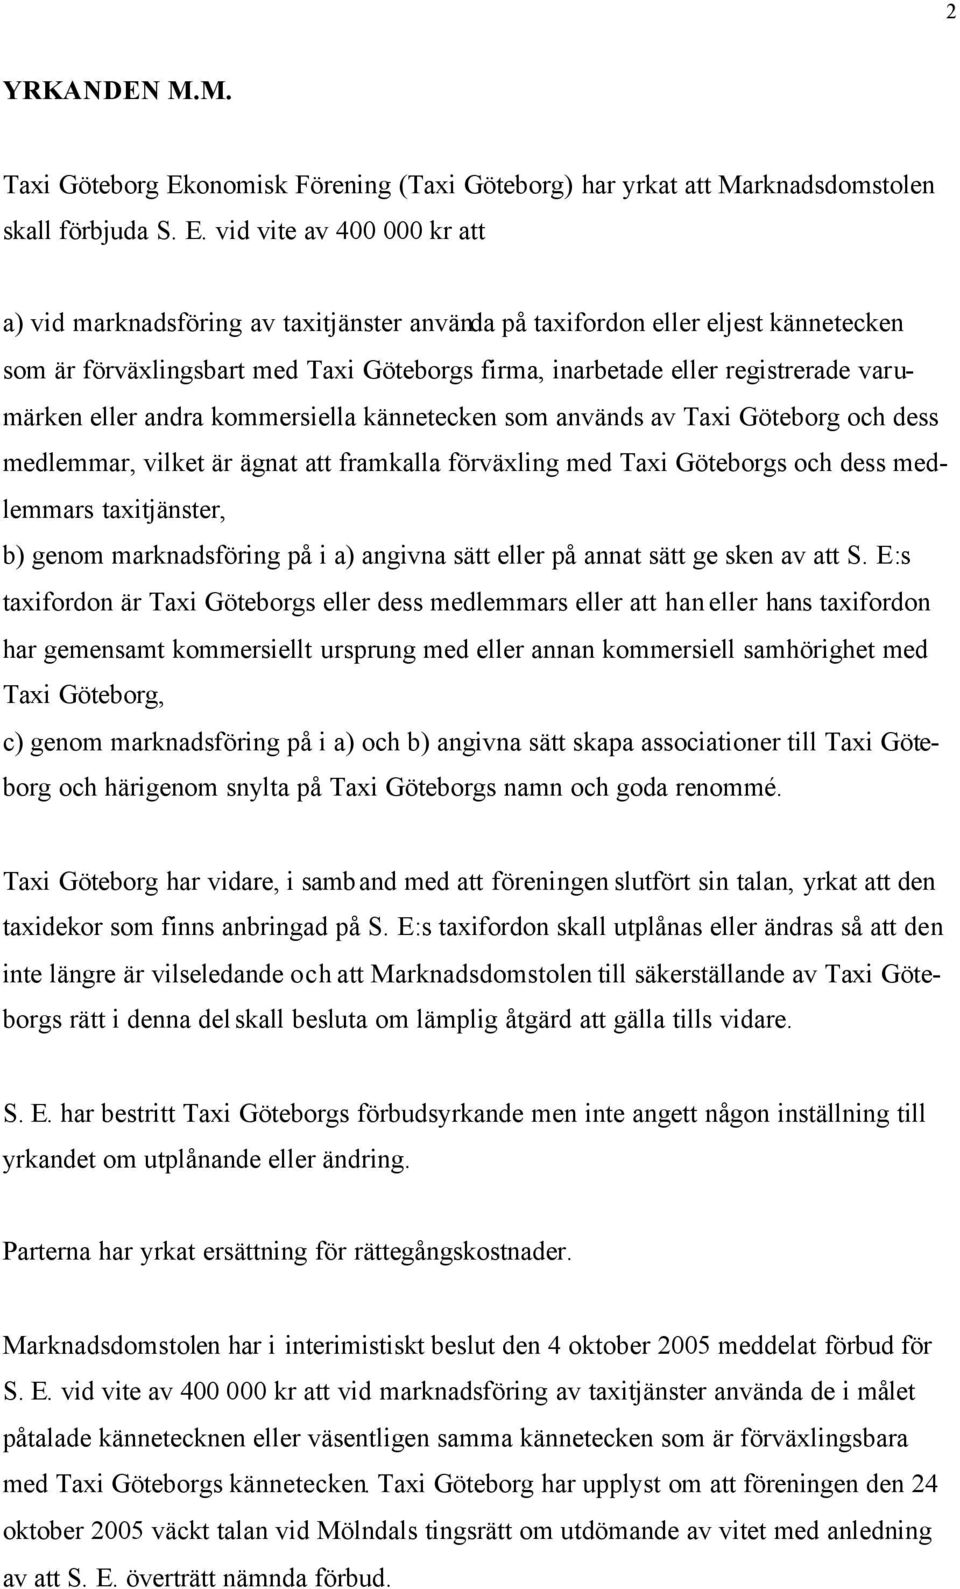 vid vite av 400 000 kr att a) vid marknadsföring av taxitjänster använda på taxifordon eller eljest kännetecken som är förväxlingsbart med Taxi Göteborgs firma, inarbetade eller registrerade